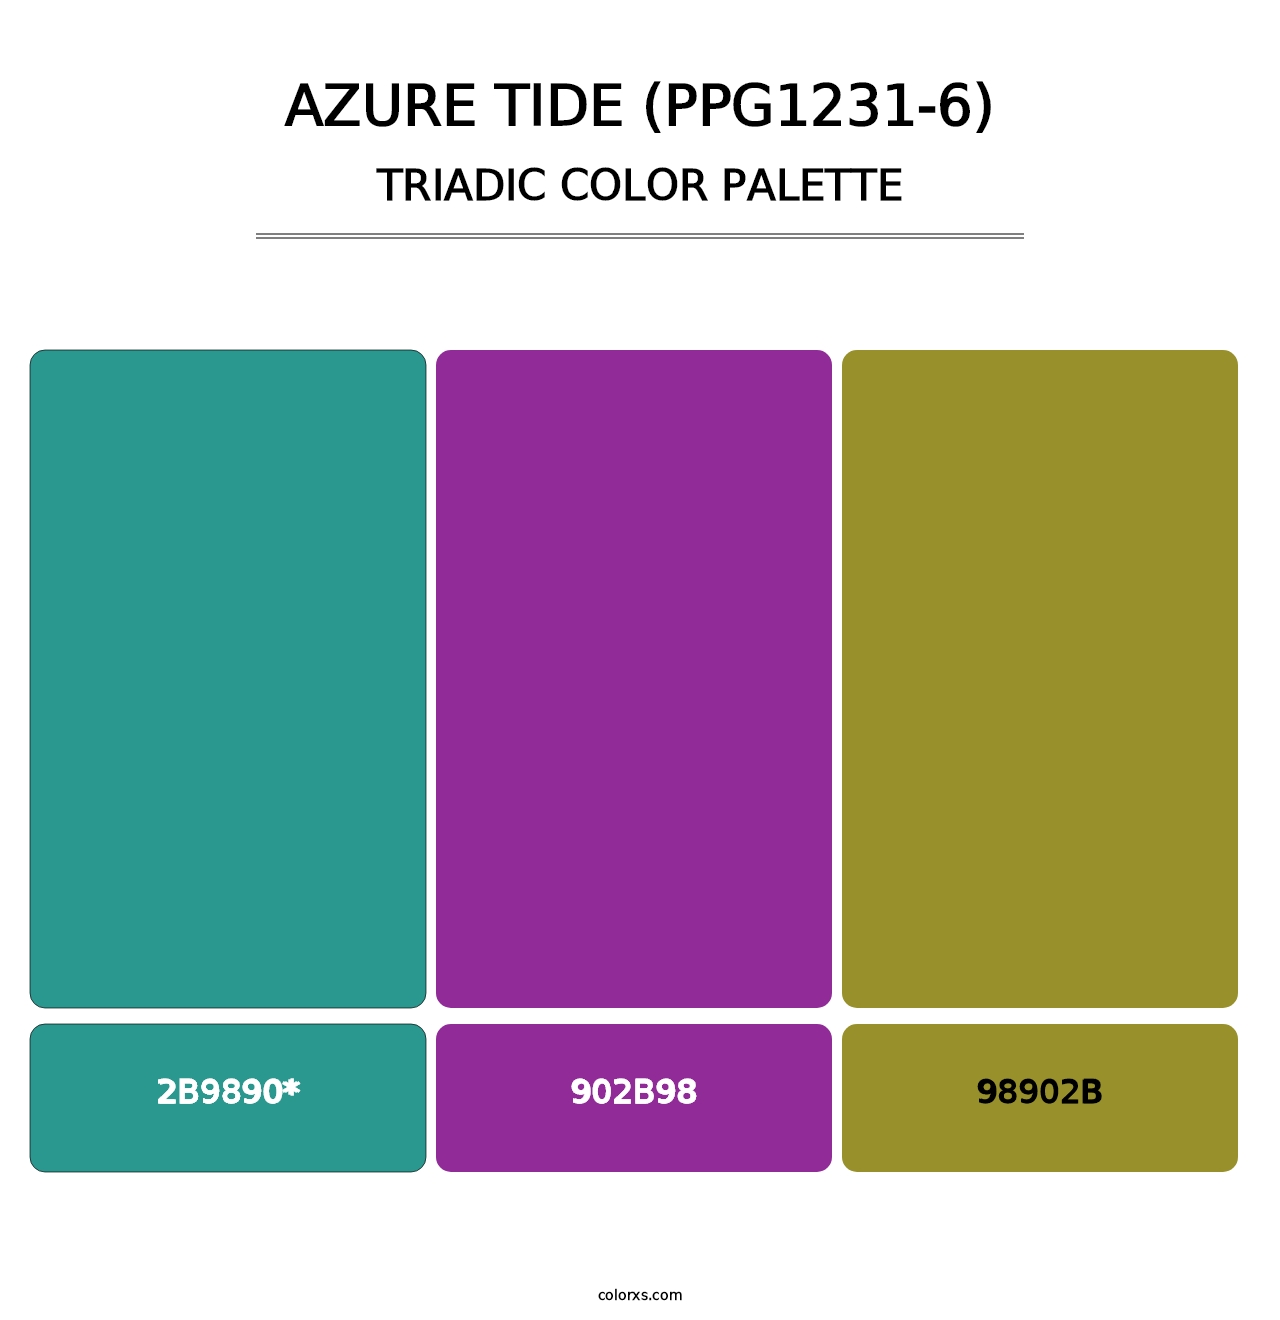 Azure Tide (PPG1231-6) - Triadic Color Palette